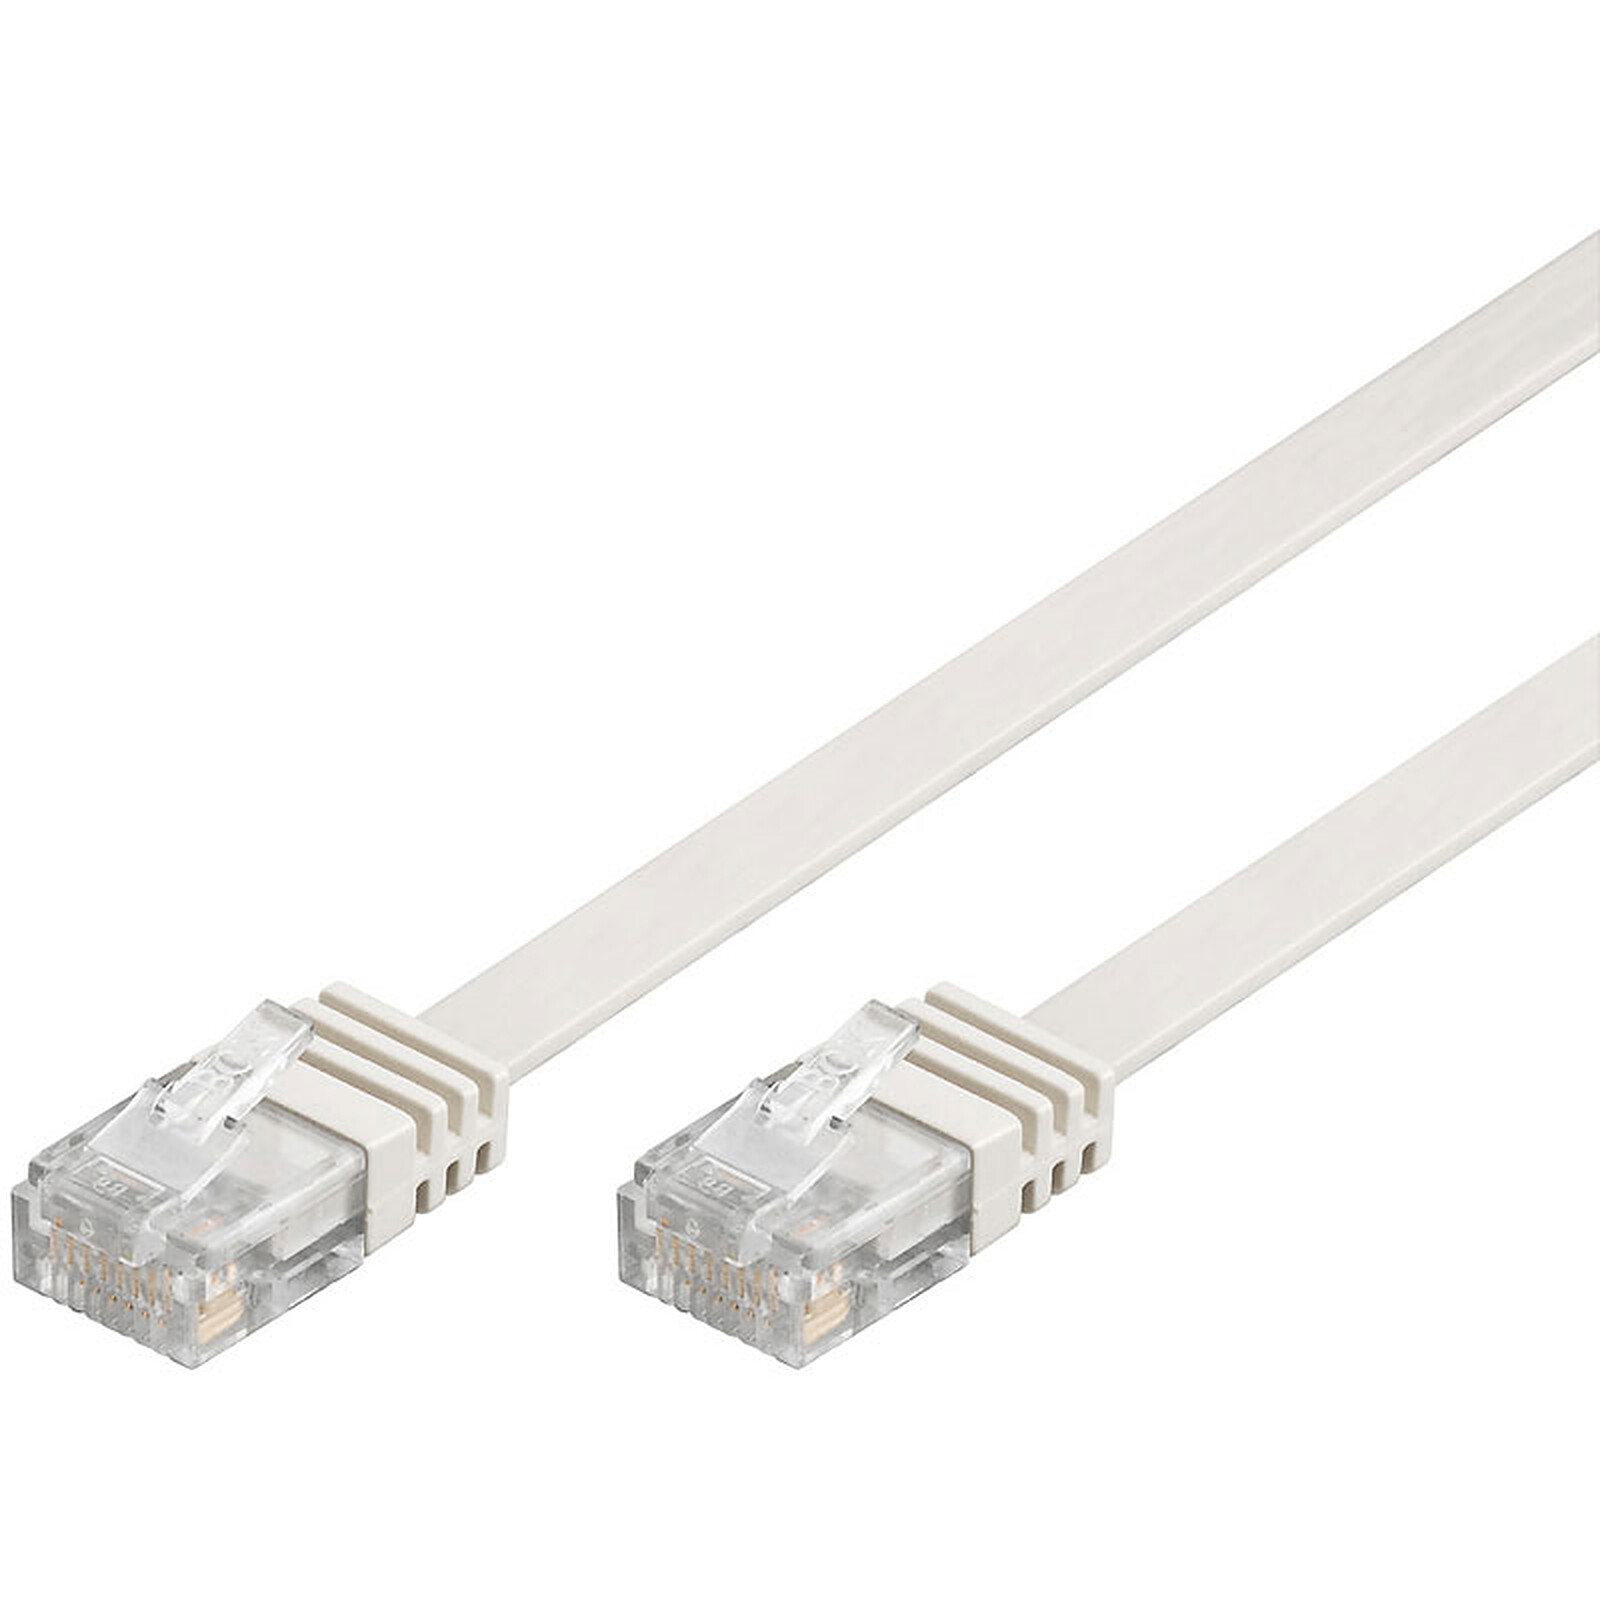 Câble Ethernet 15m Cat 6 Cable RJ45 15m Câble de Réseau, Plat